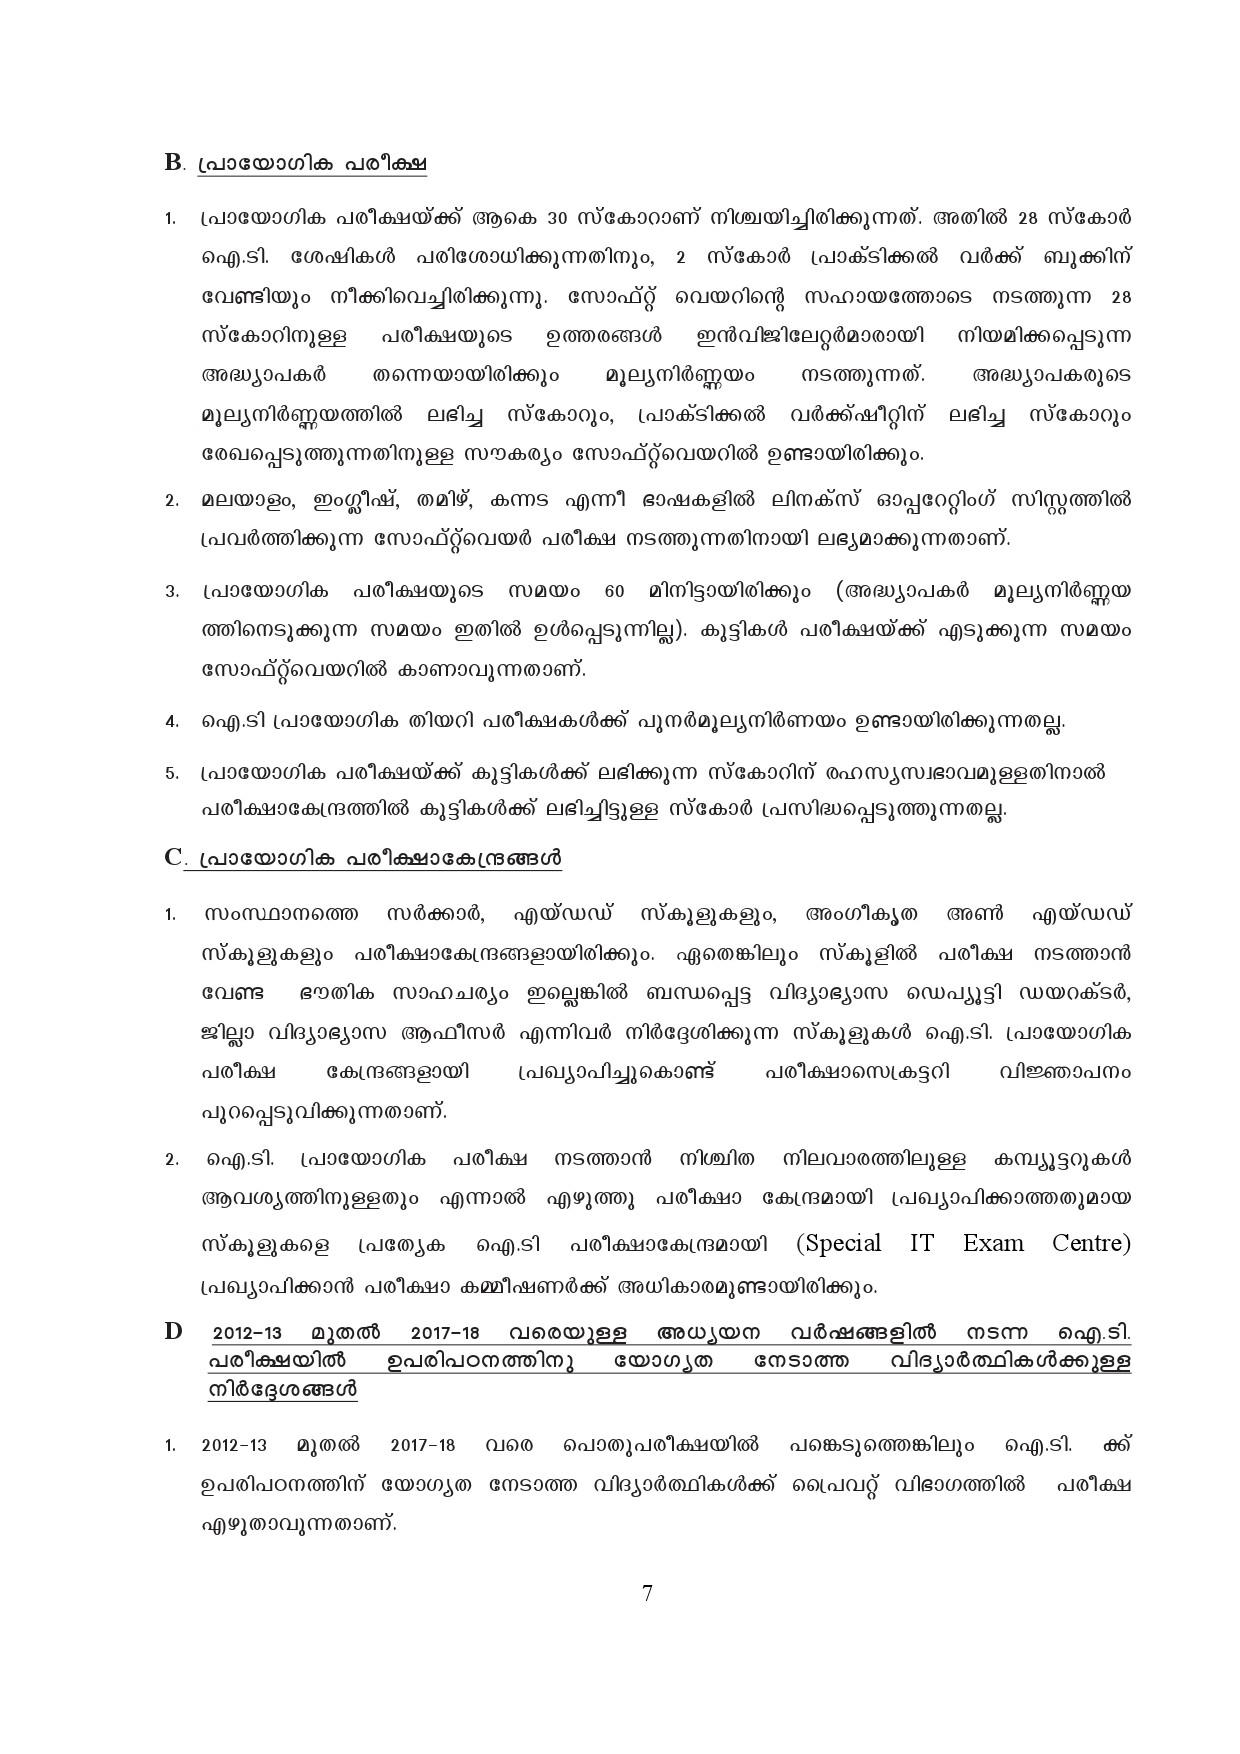 Kerala SSLC Exam Result 2019 - Notification Image 7